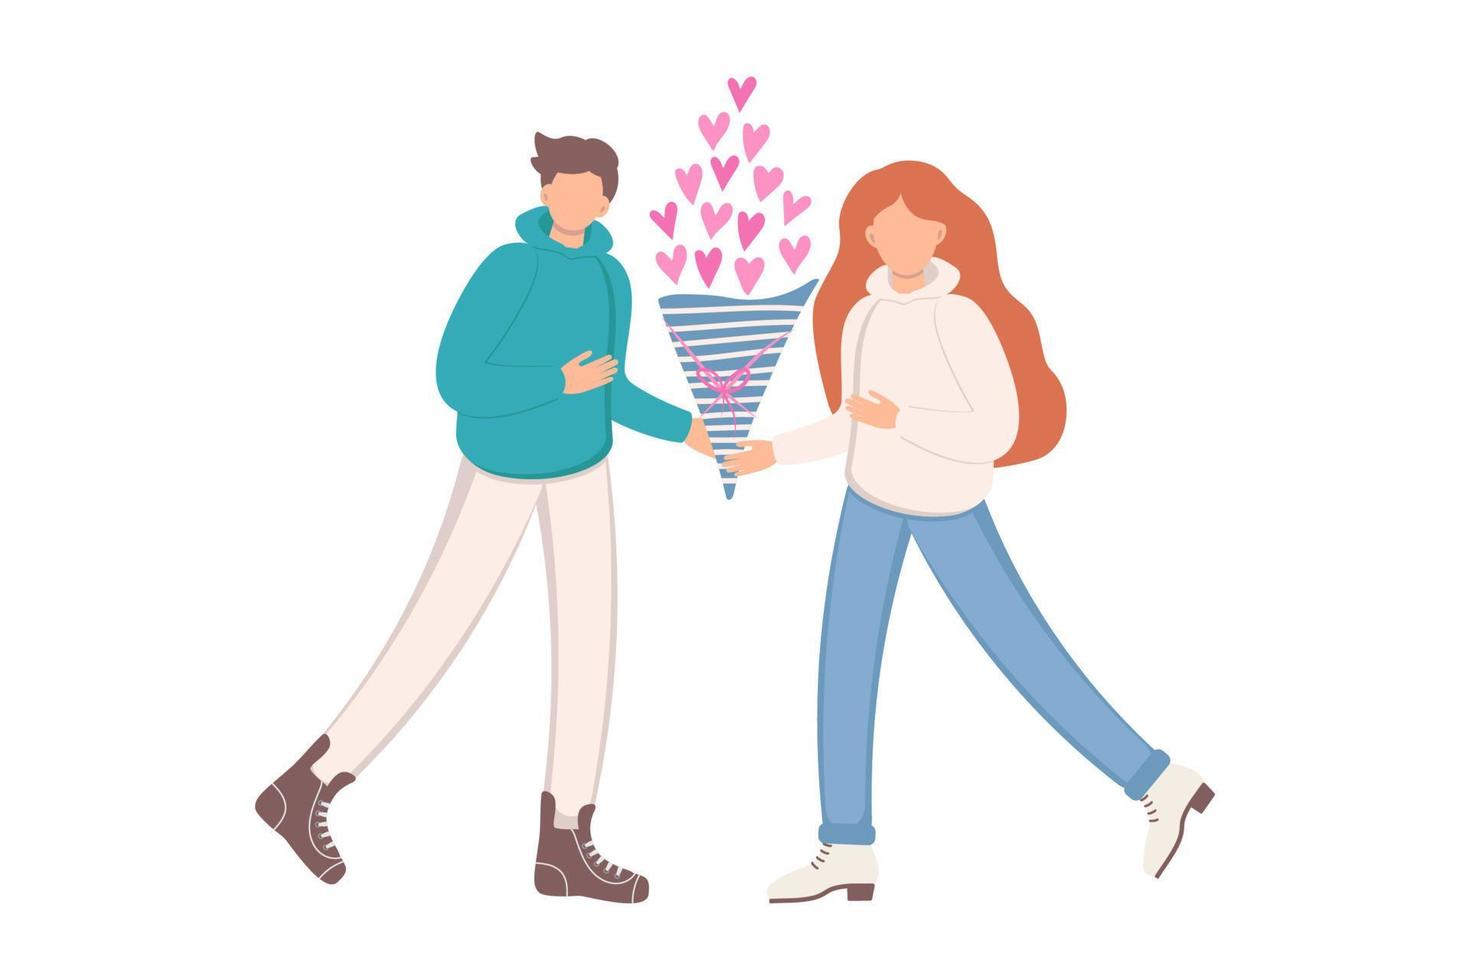 relaciones humanas pareja amorosa. tarjeta del día de san valentín. ilustración vectorial vector